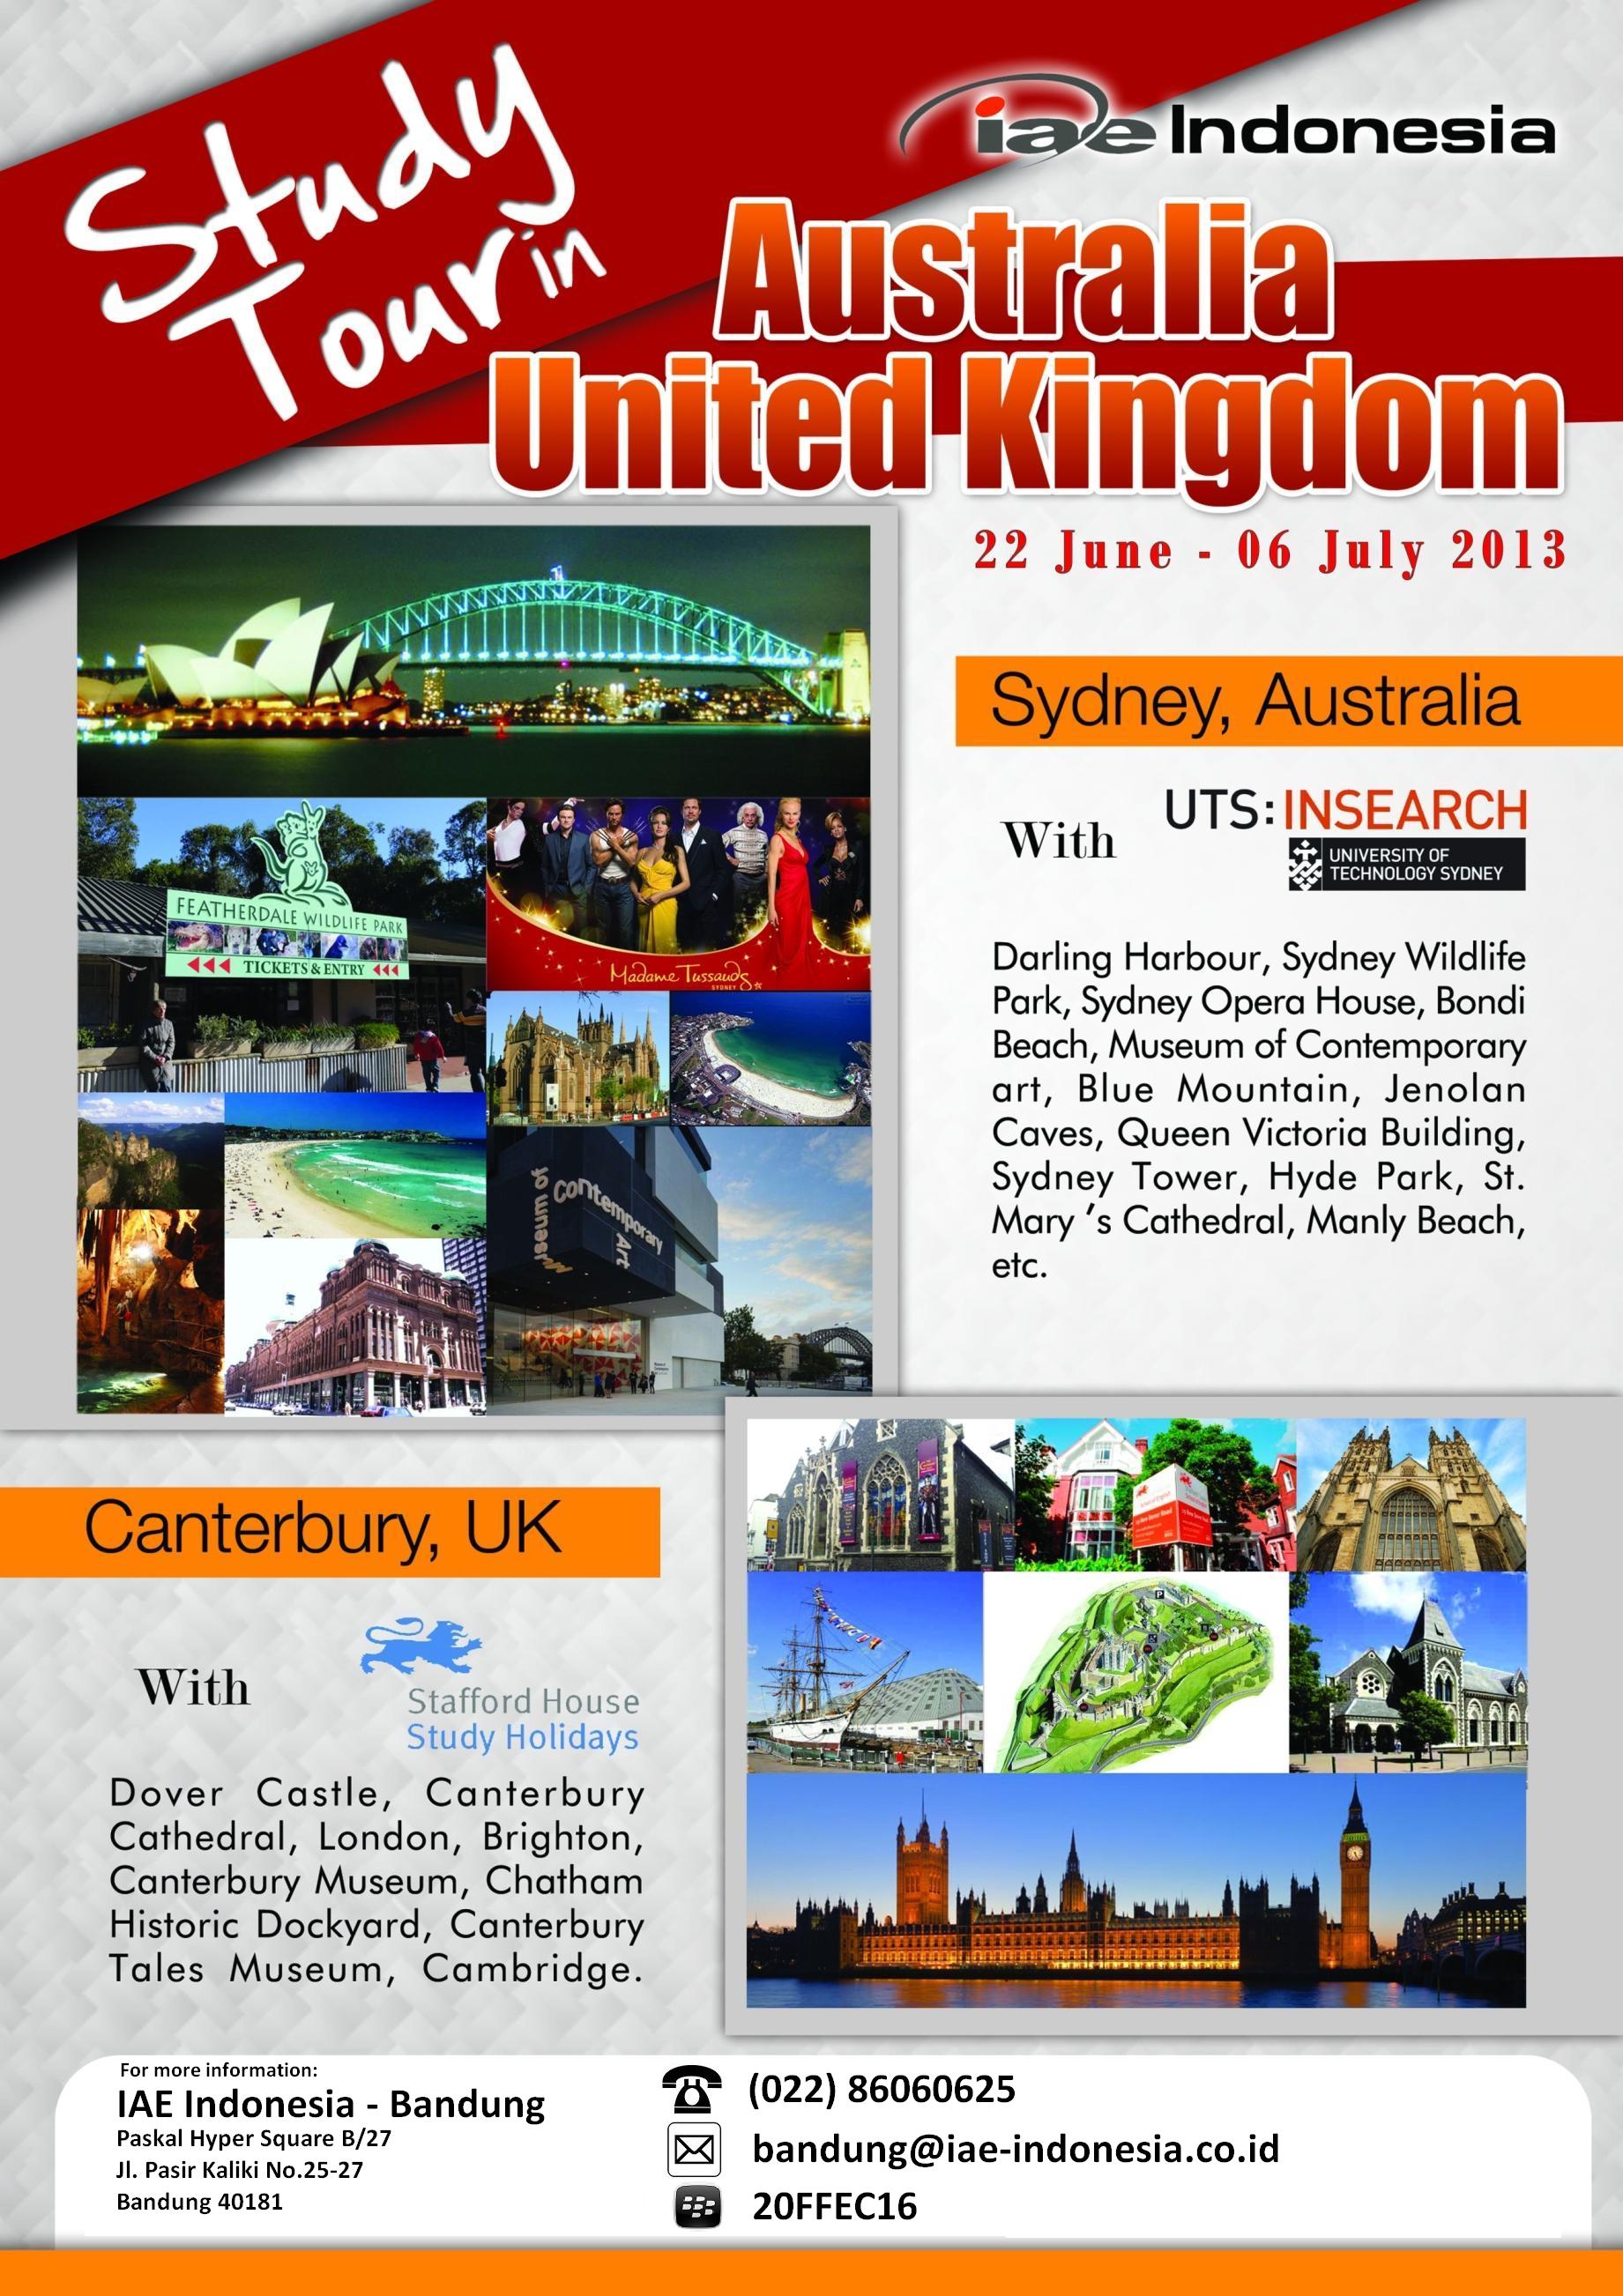 Poster Study Tour Bandung Activities Sydney